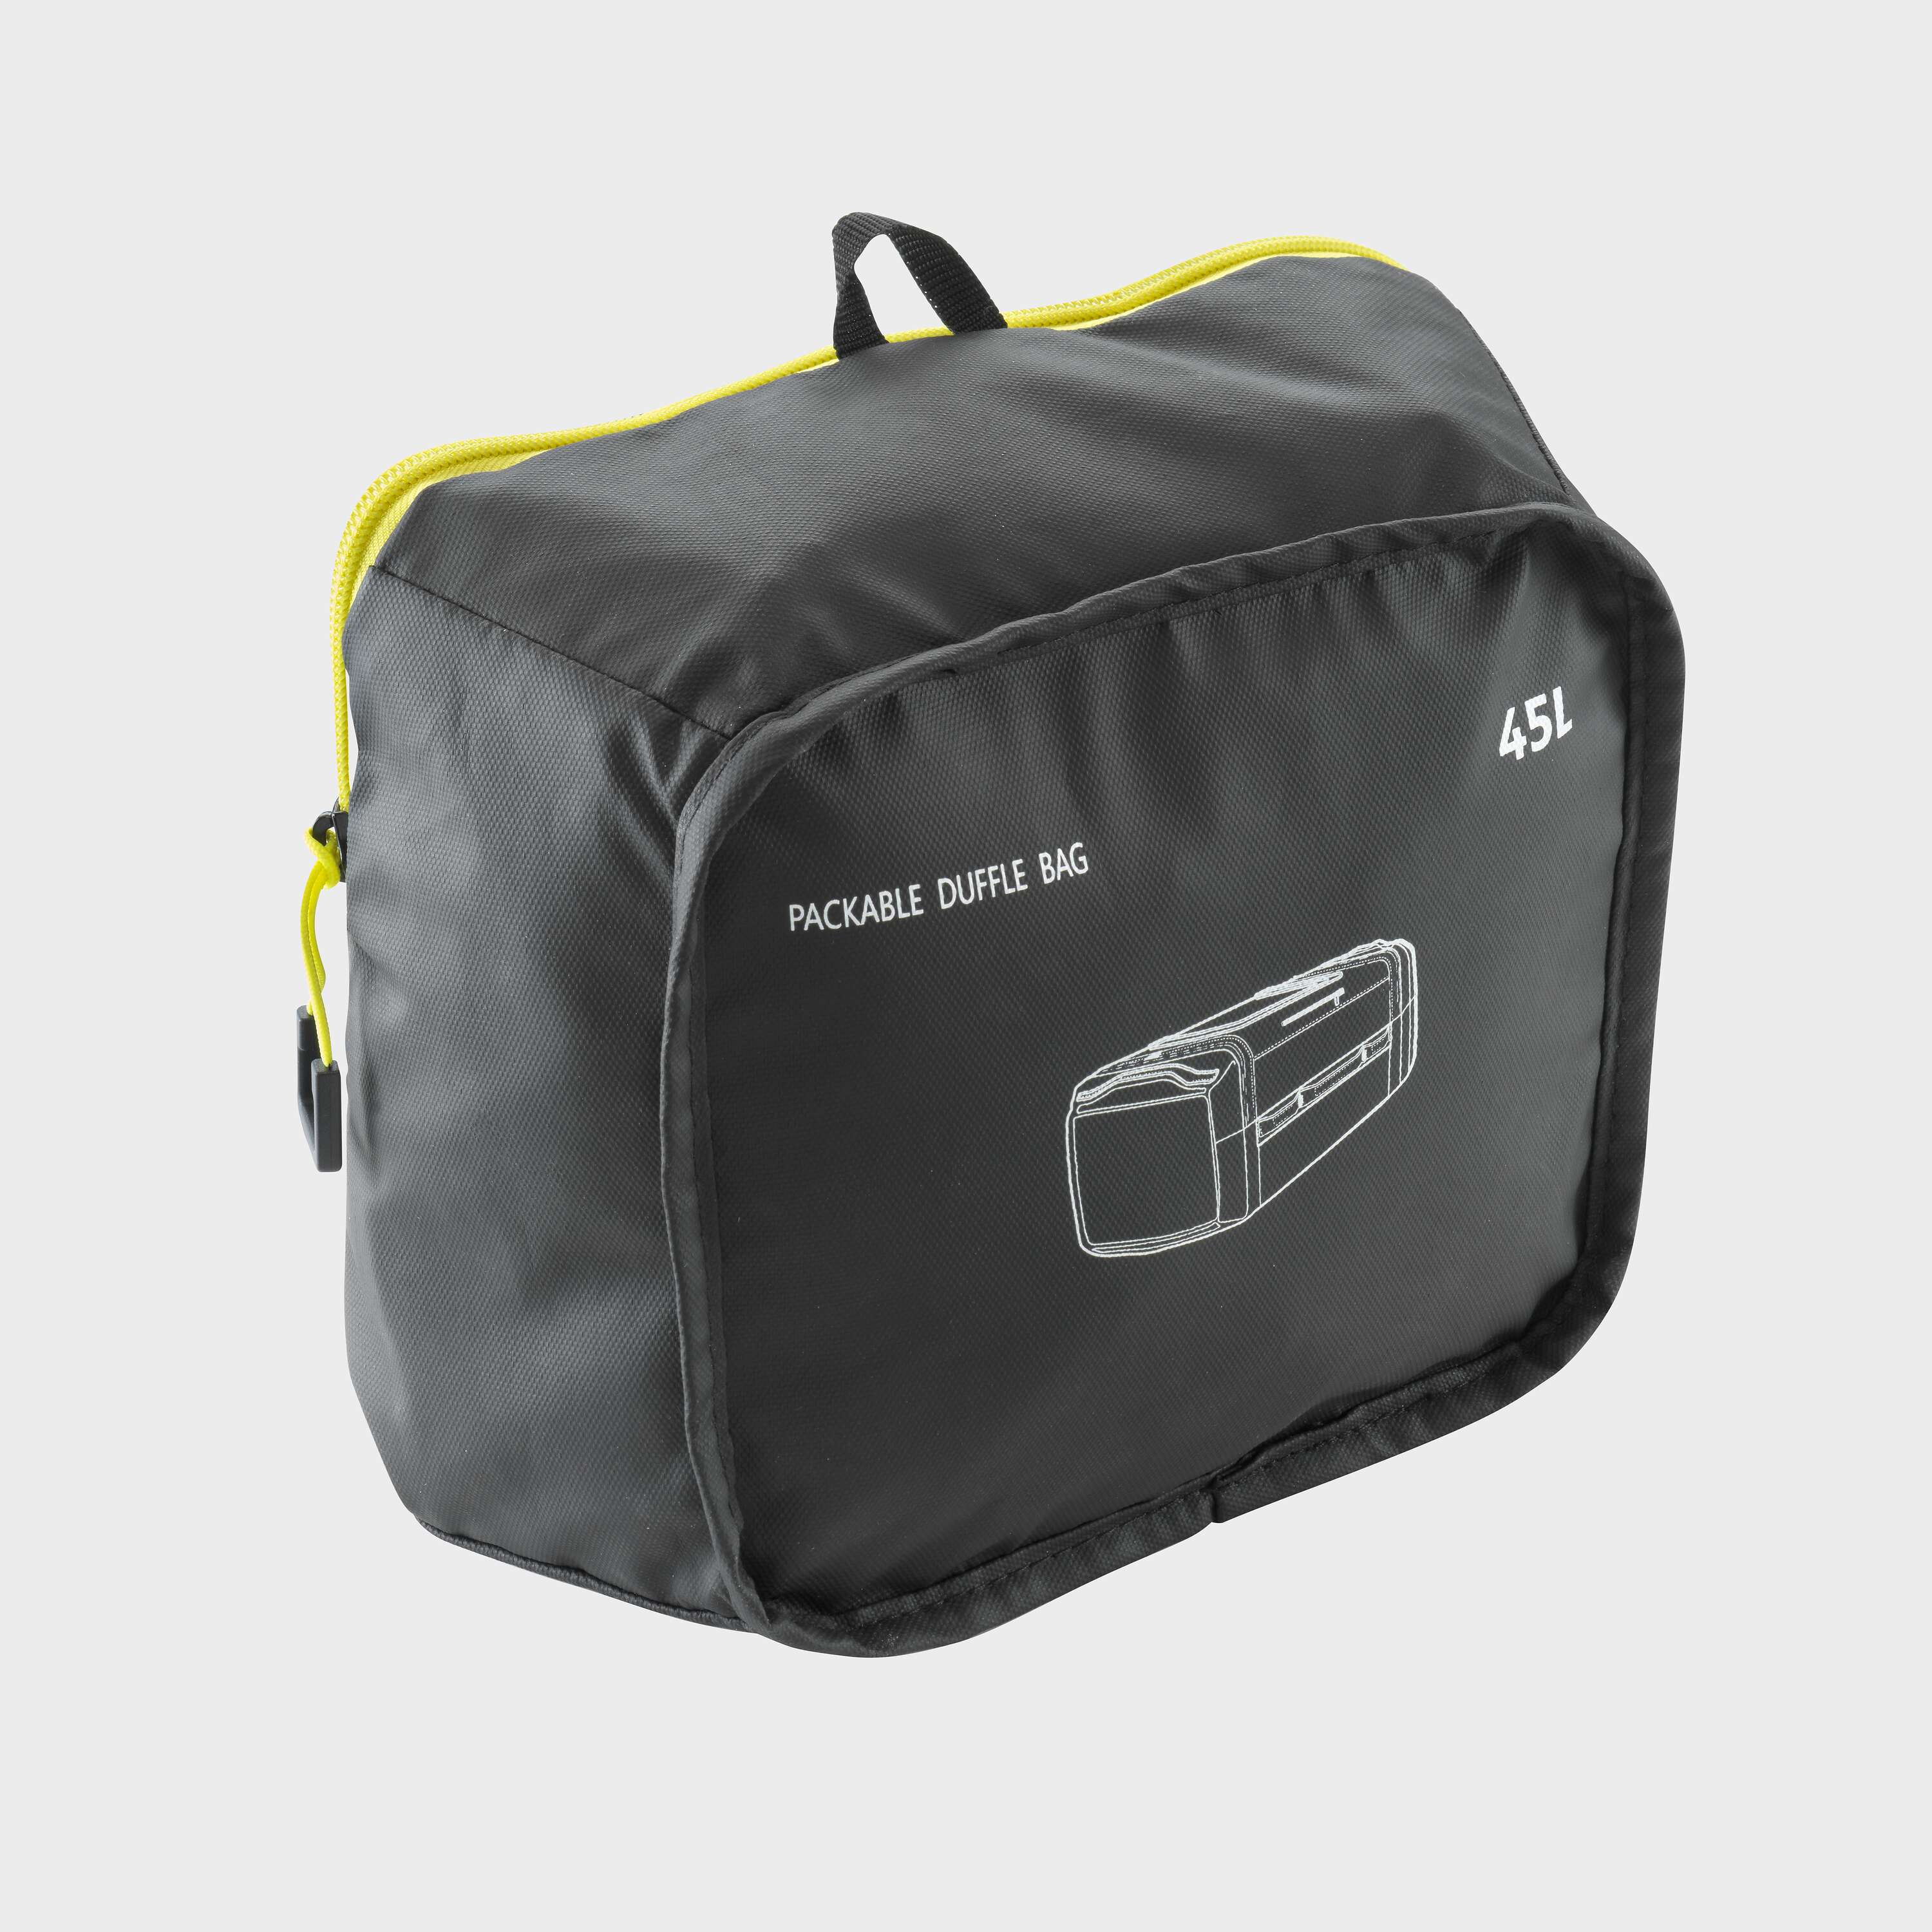 Husqvarna Duffle Bag 45L Packable